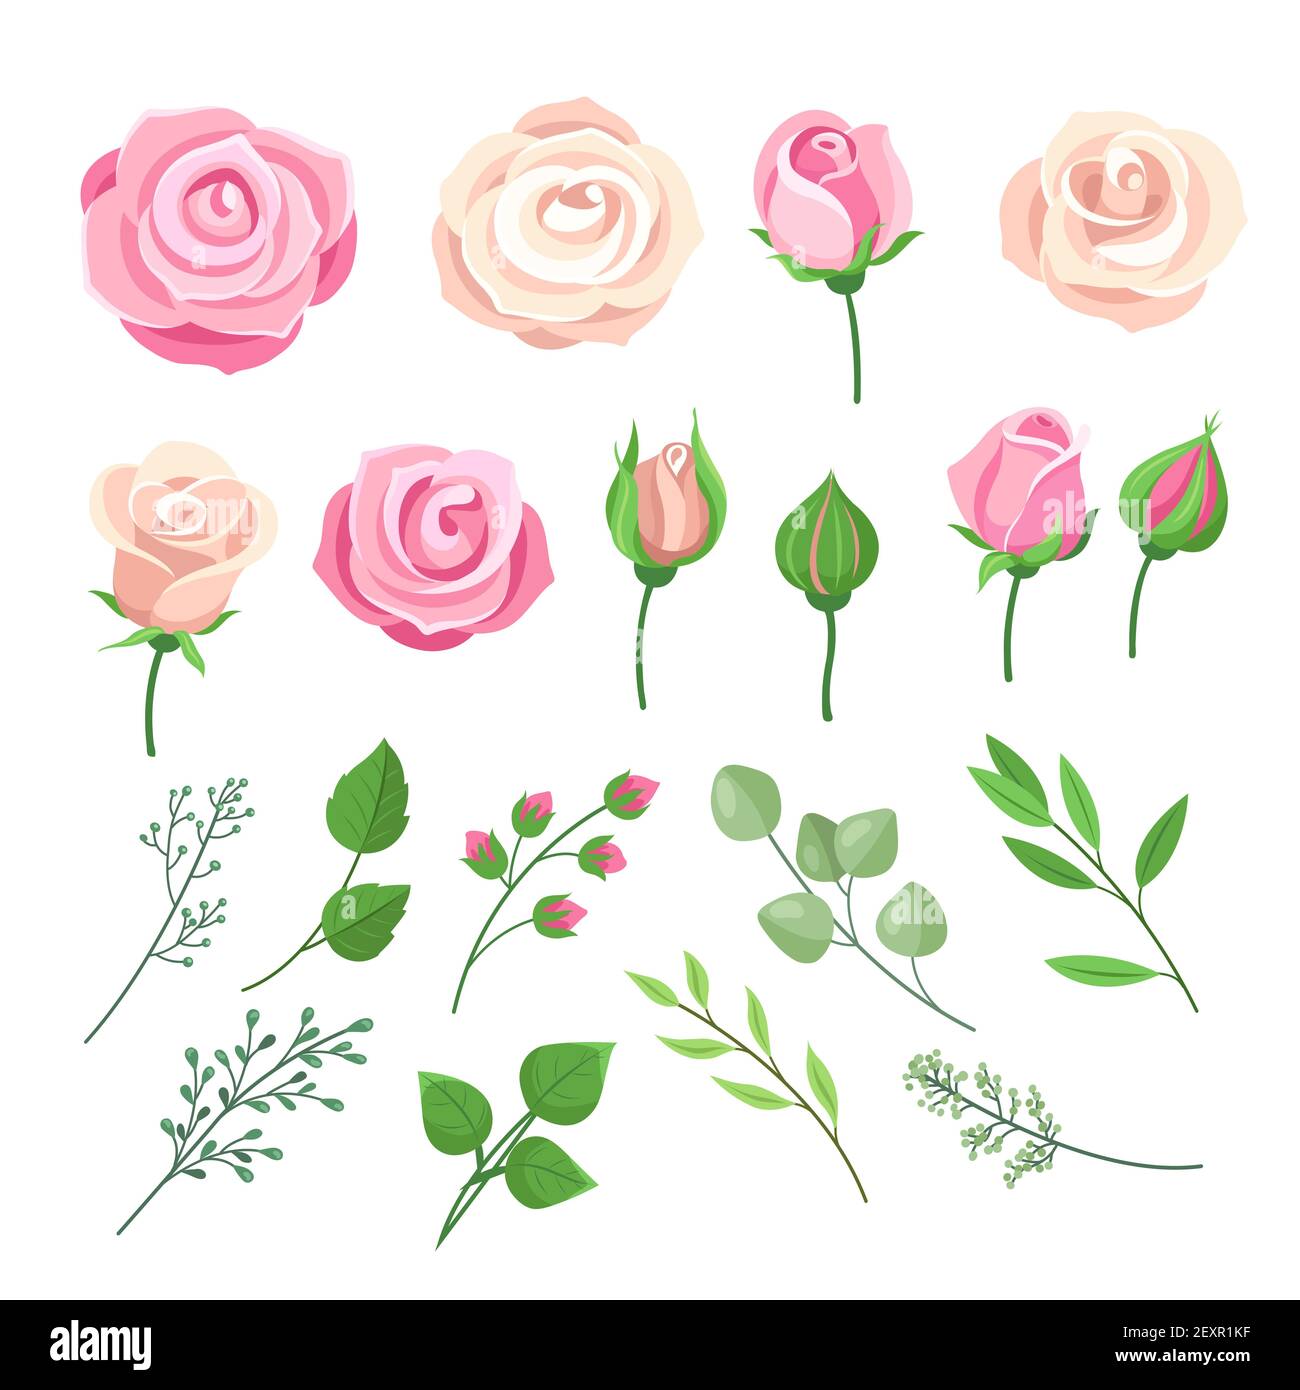 Rosenelemente. Rosa und weiße Rosen blühen mit grünen Blättern und Knospen. Romantische Hochzeitsdekor mit Wasserfarben und Blumenmuster. Isolierter Vektorsatz Stock Vektor